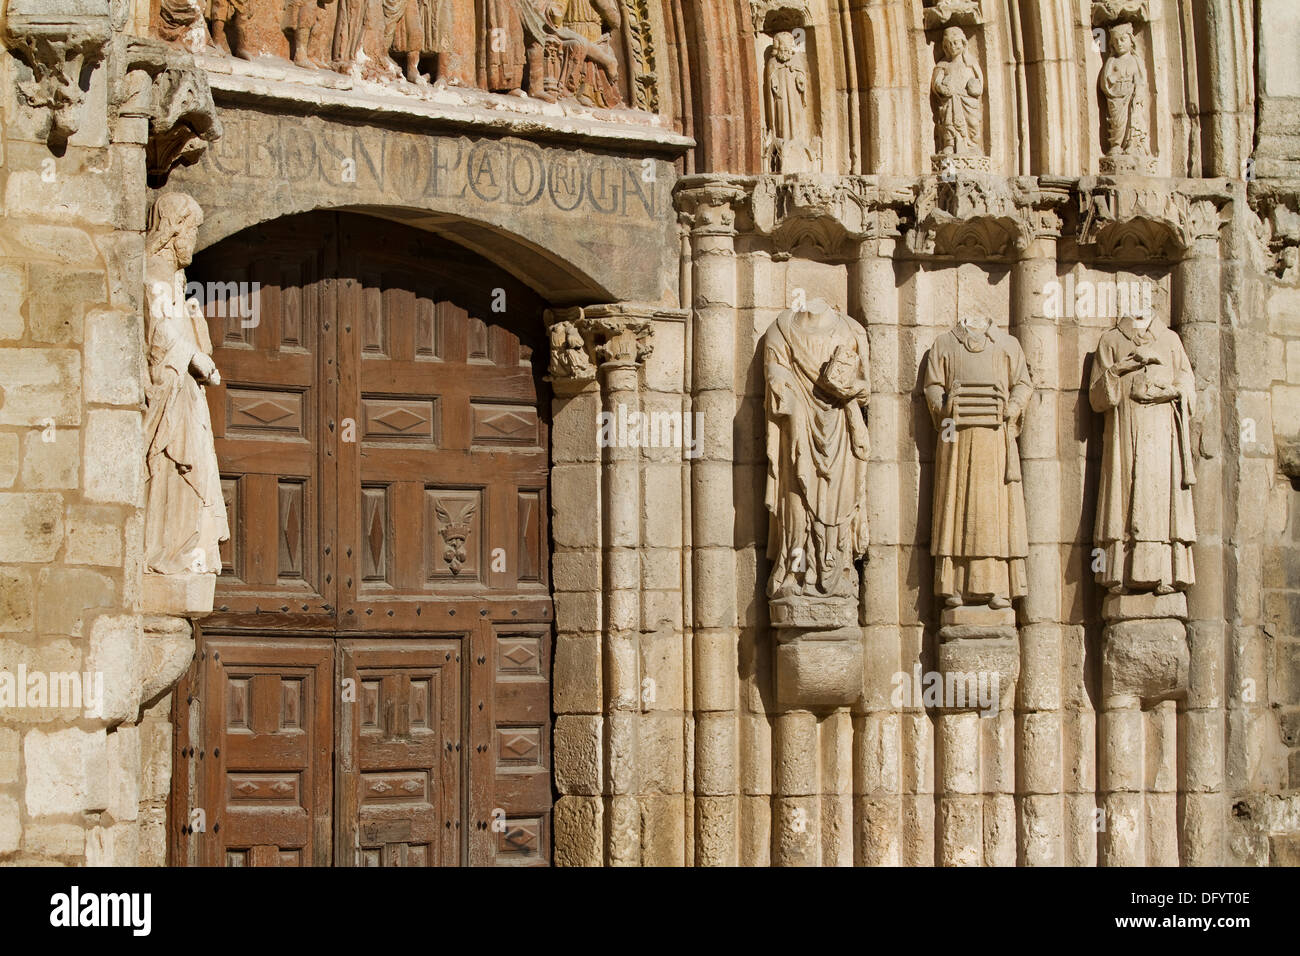 Détail de montants de porte en façade principale de l''église San Esteban, Burgos, Castille et Leon. Espagne Banque D'Images